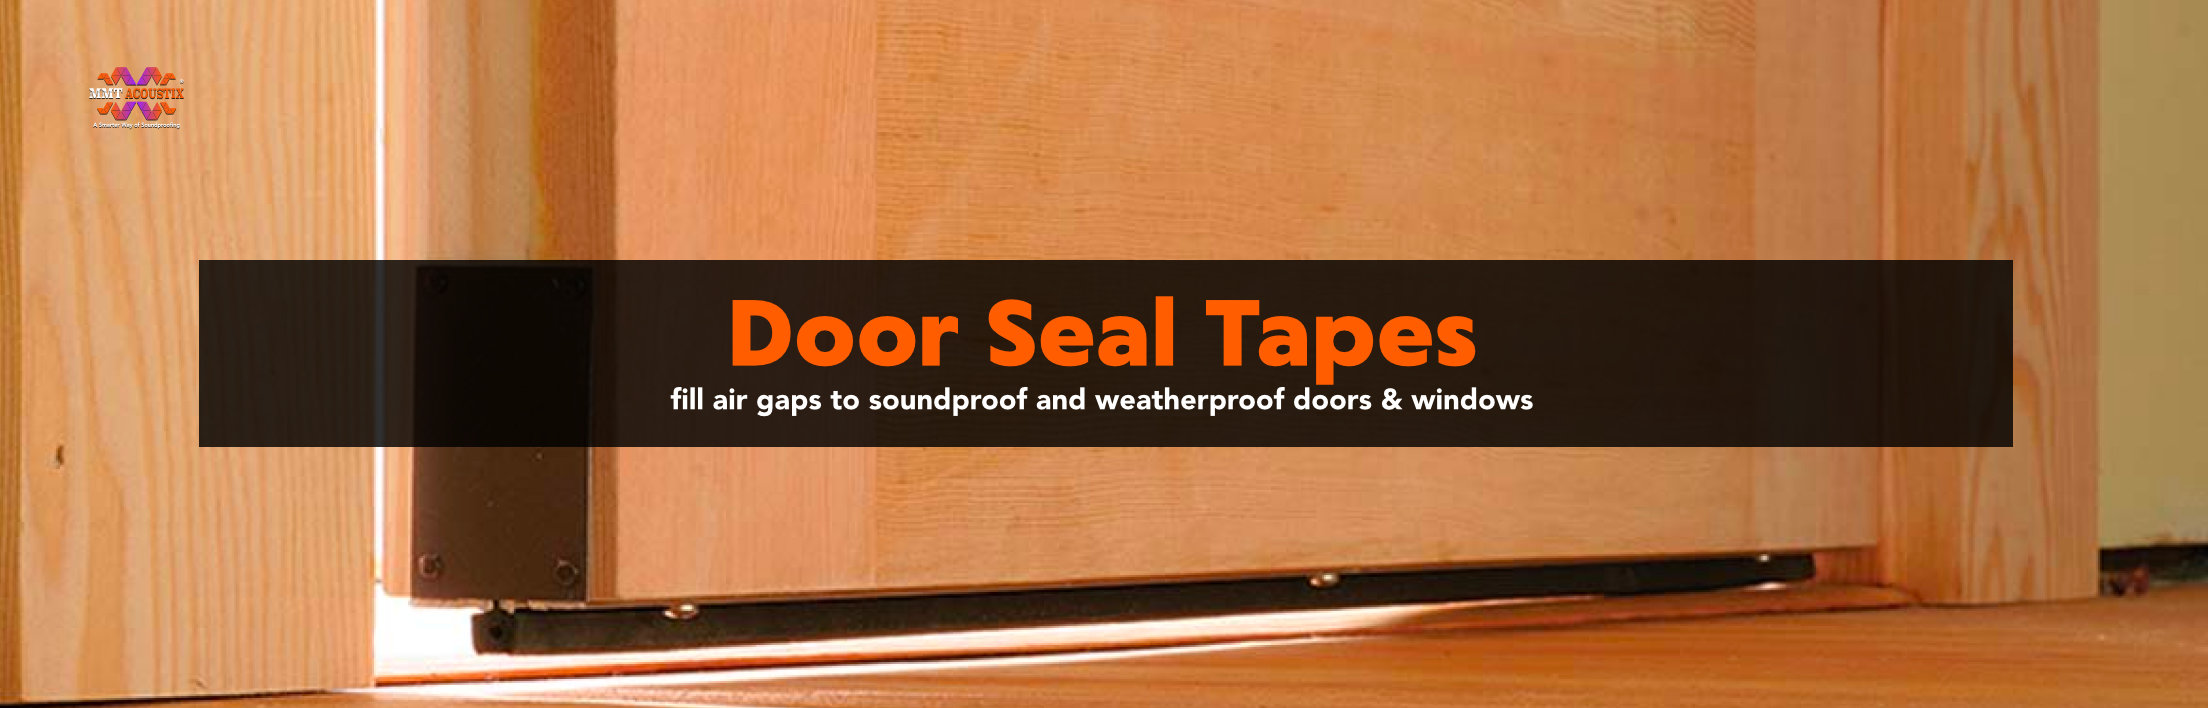 door-seal-tapes